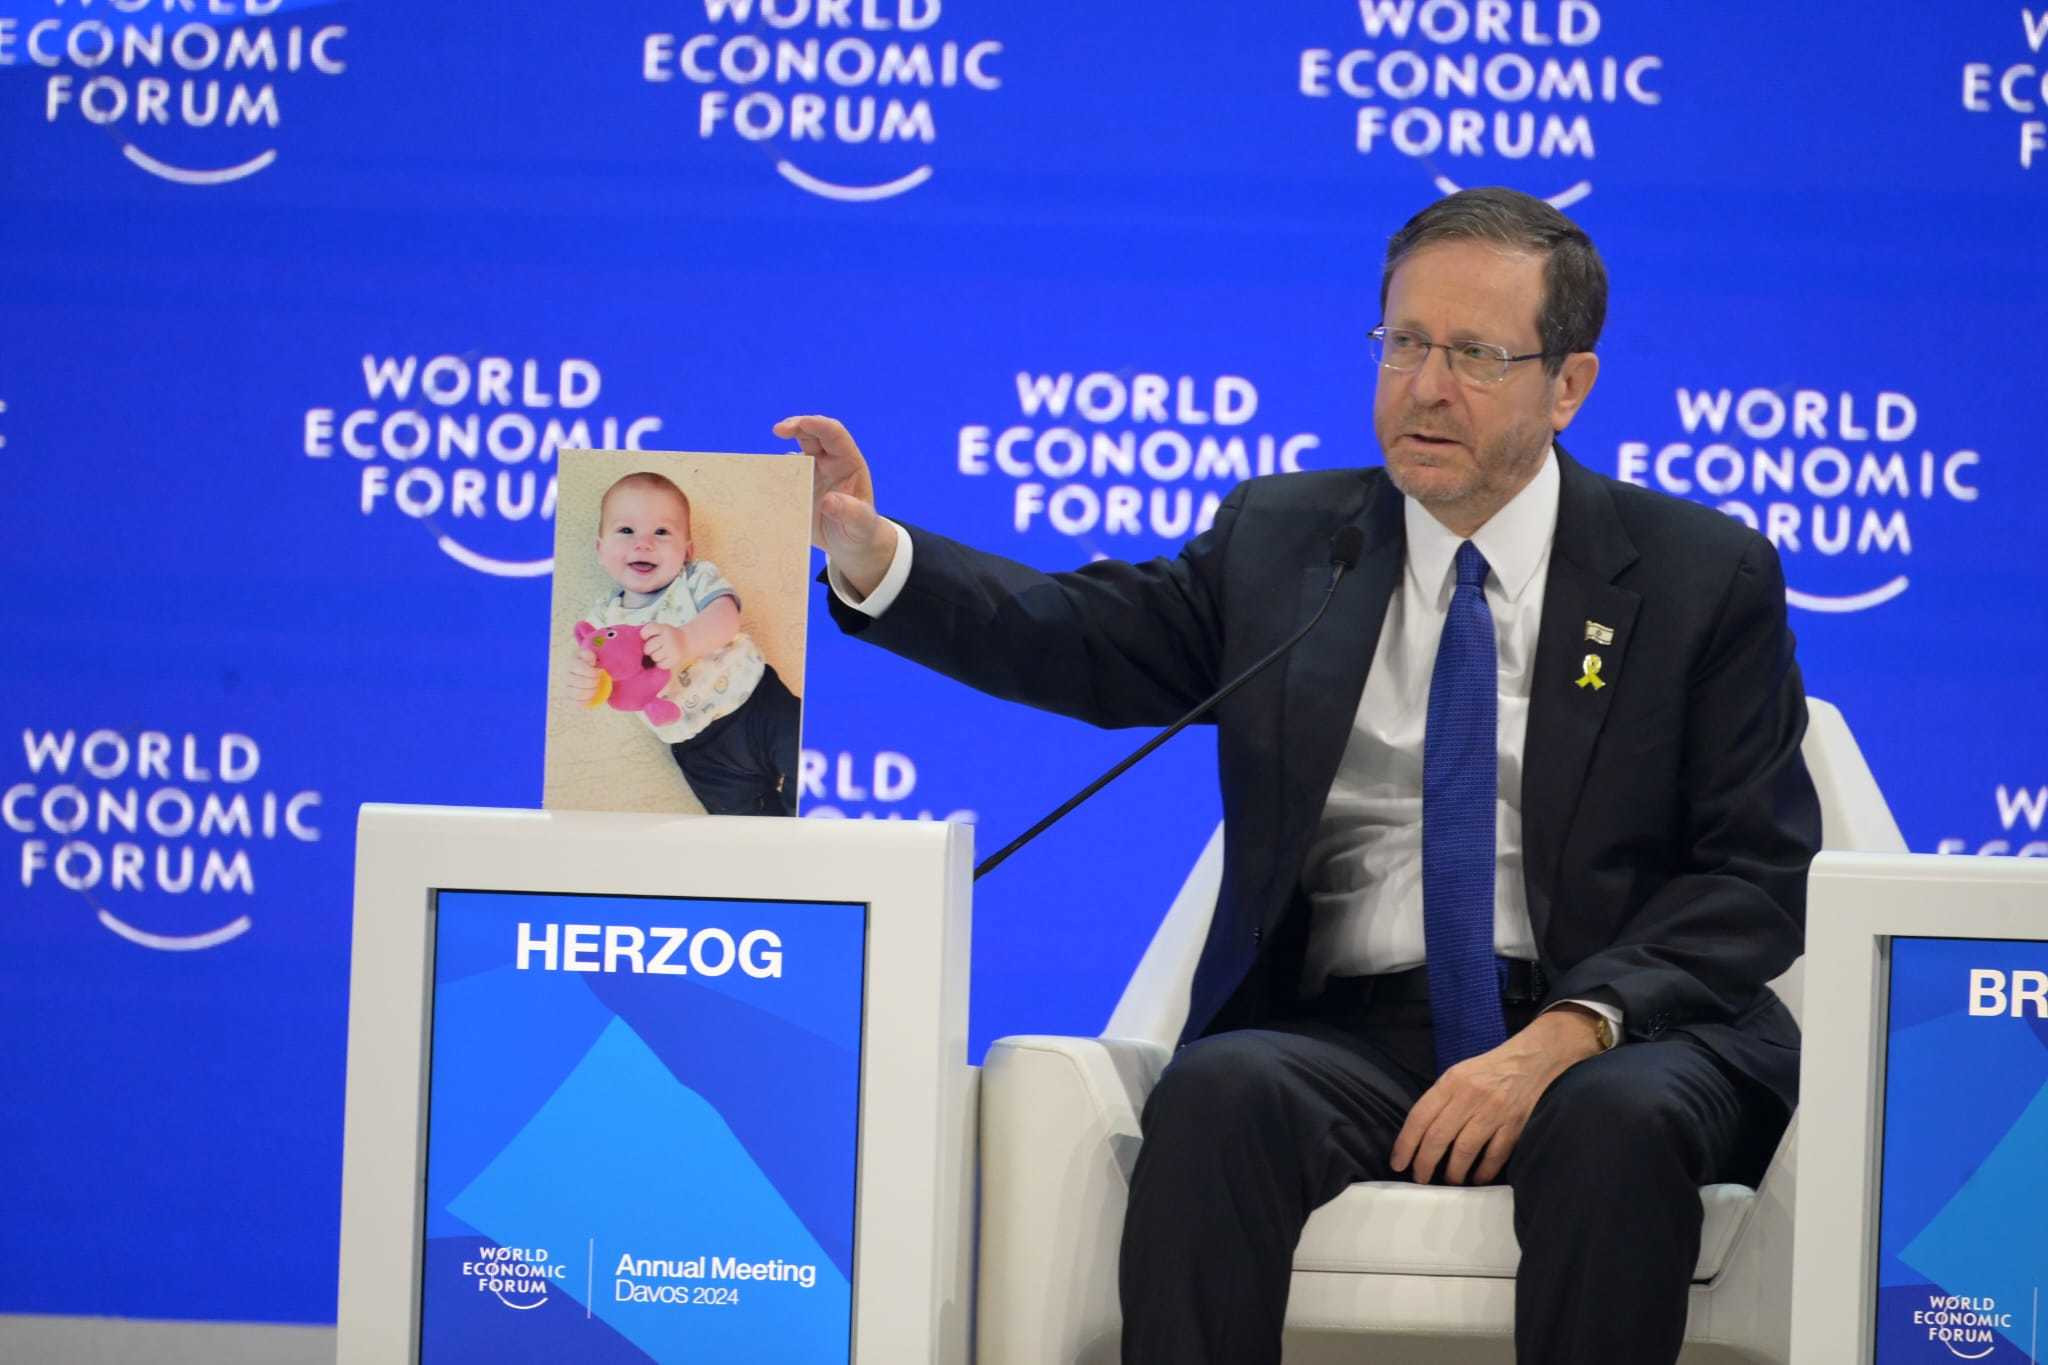 לציון יום הולדתו של התינוק החטוף כפיר ביבס: נשיא המדינה עם תמונתו על בימת הכנס הכלכלי העולמי בדאבוס